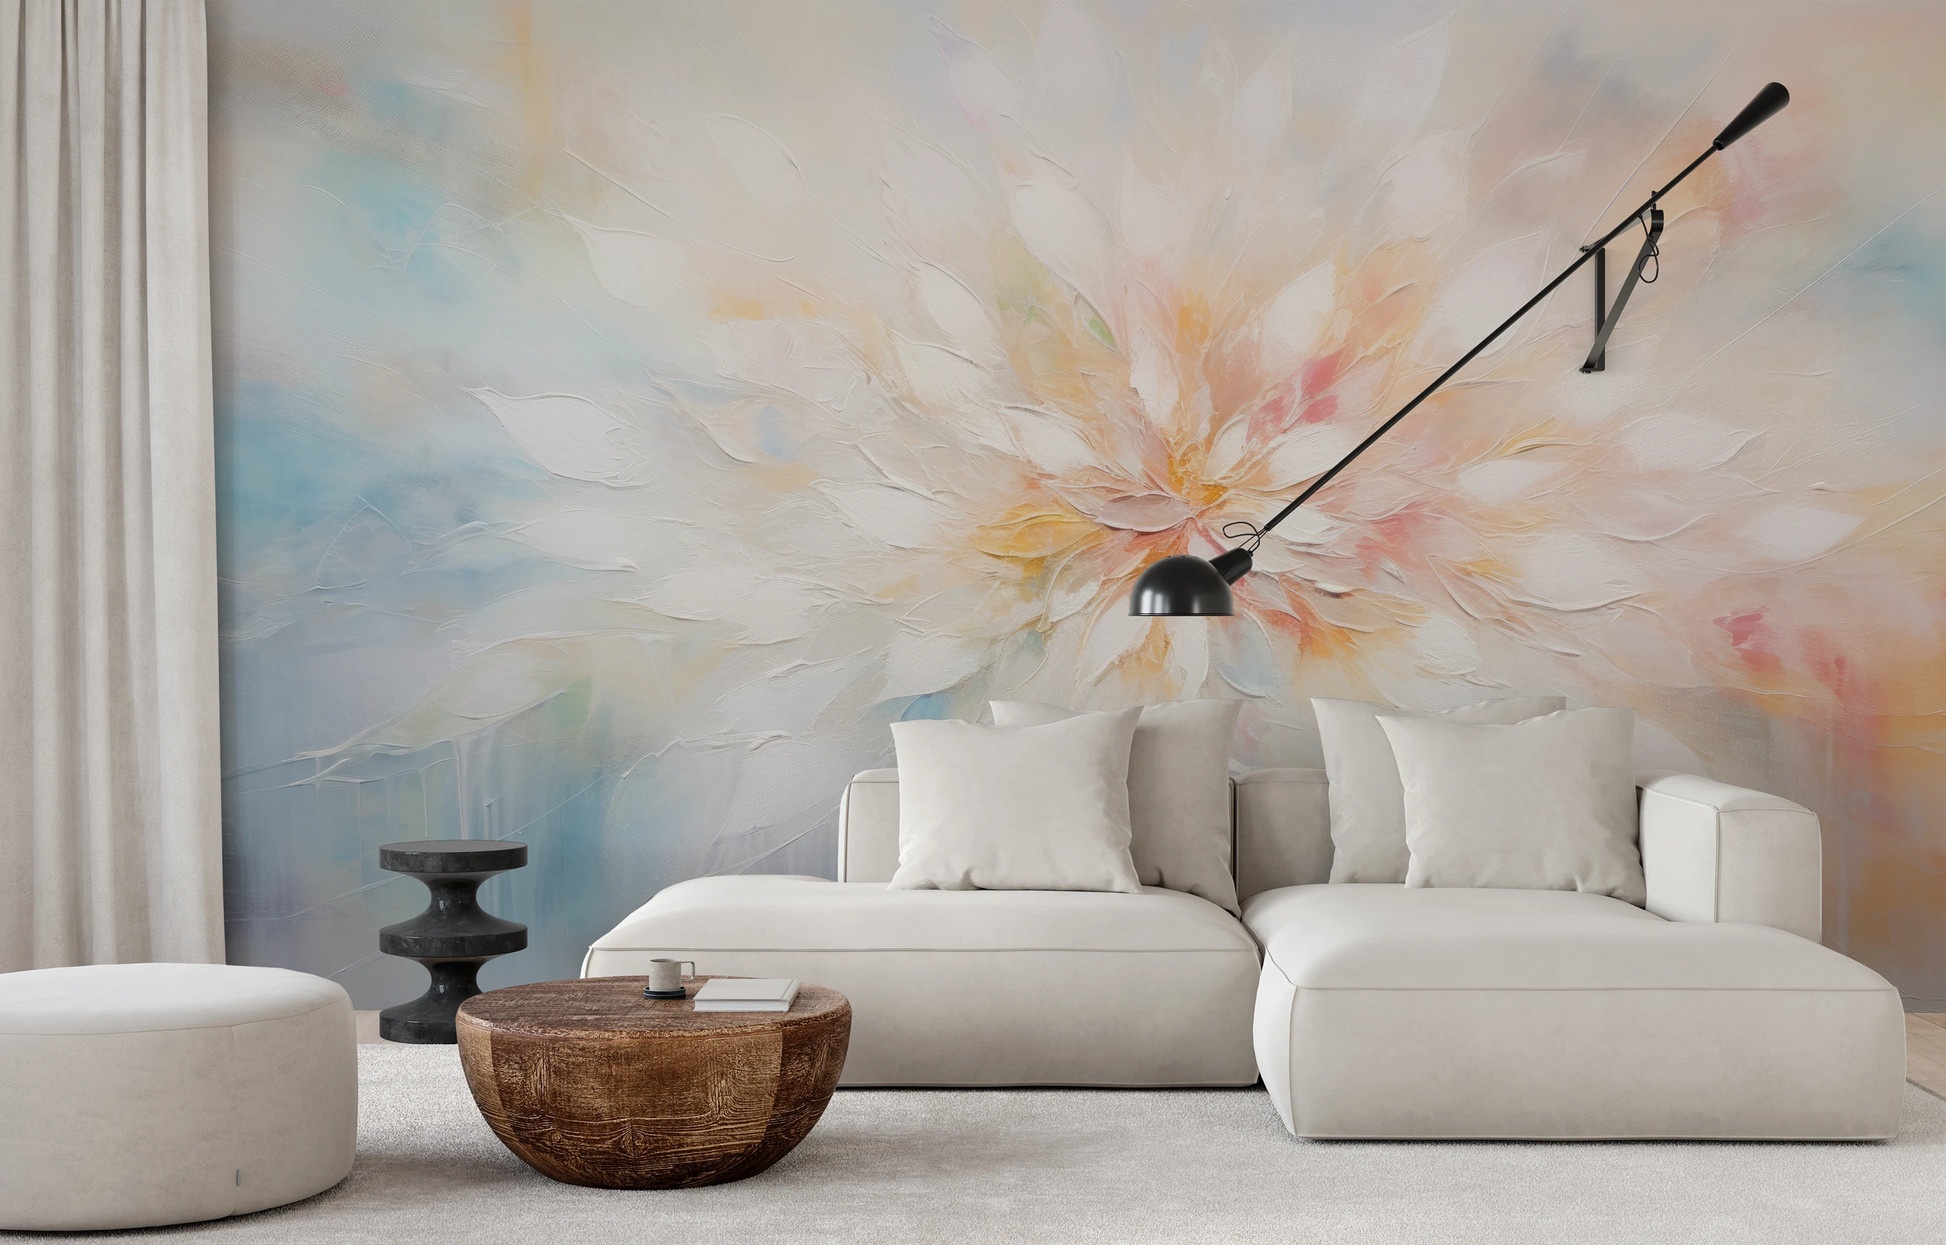 Wzór fototapety artystycznej o nazwie Ethereal Blossom pokazanej w aranżacji wnętrza.